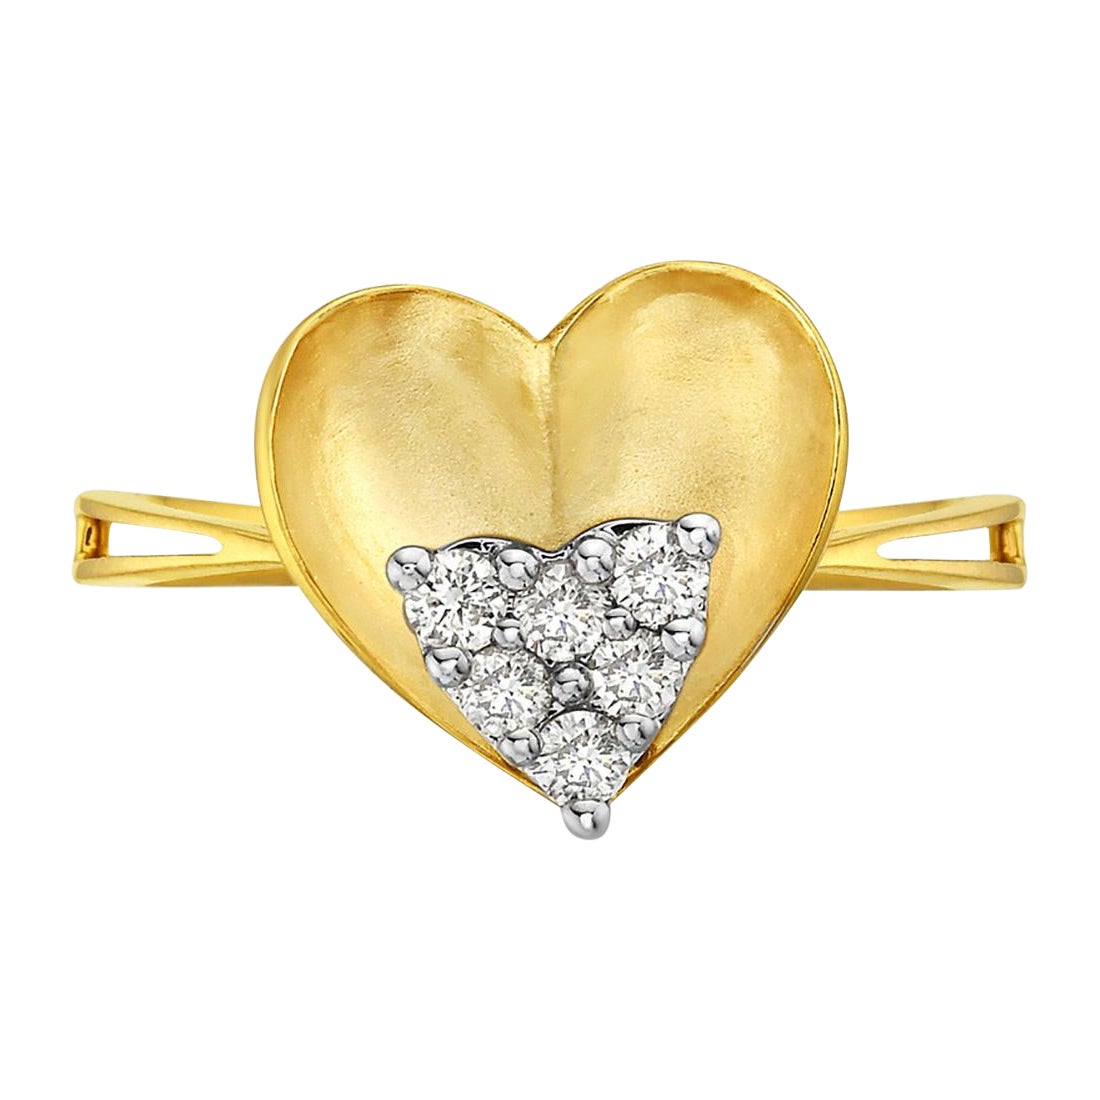 Bague classique en or jaune 14k en forme de coeur équipée de diamants au centre